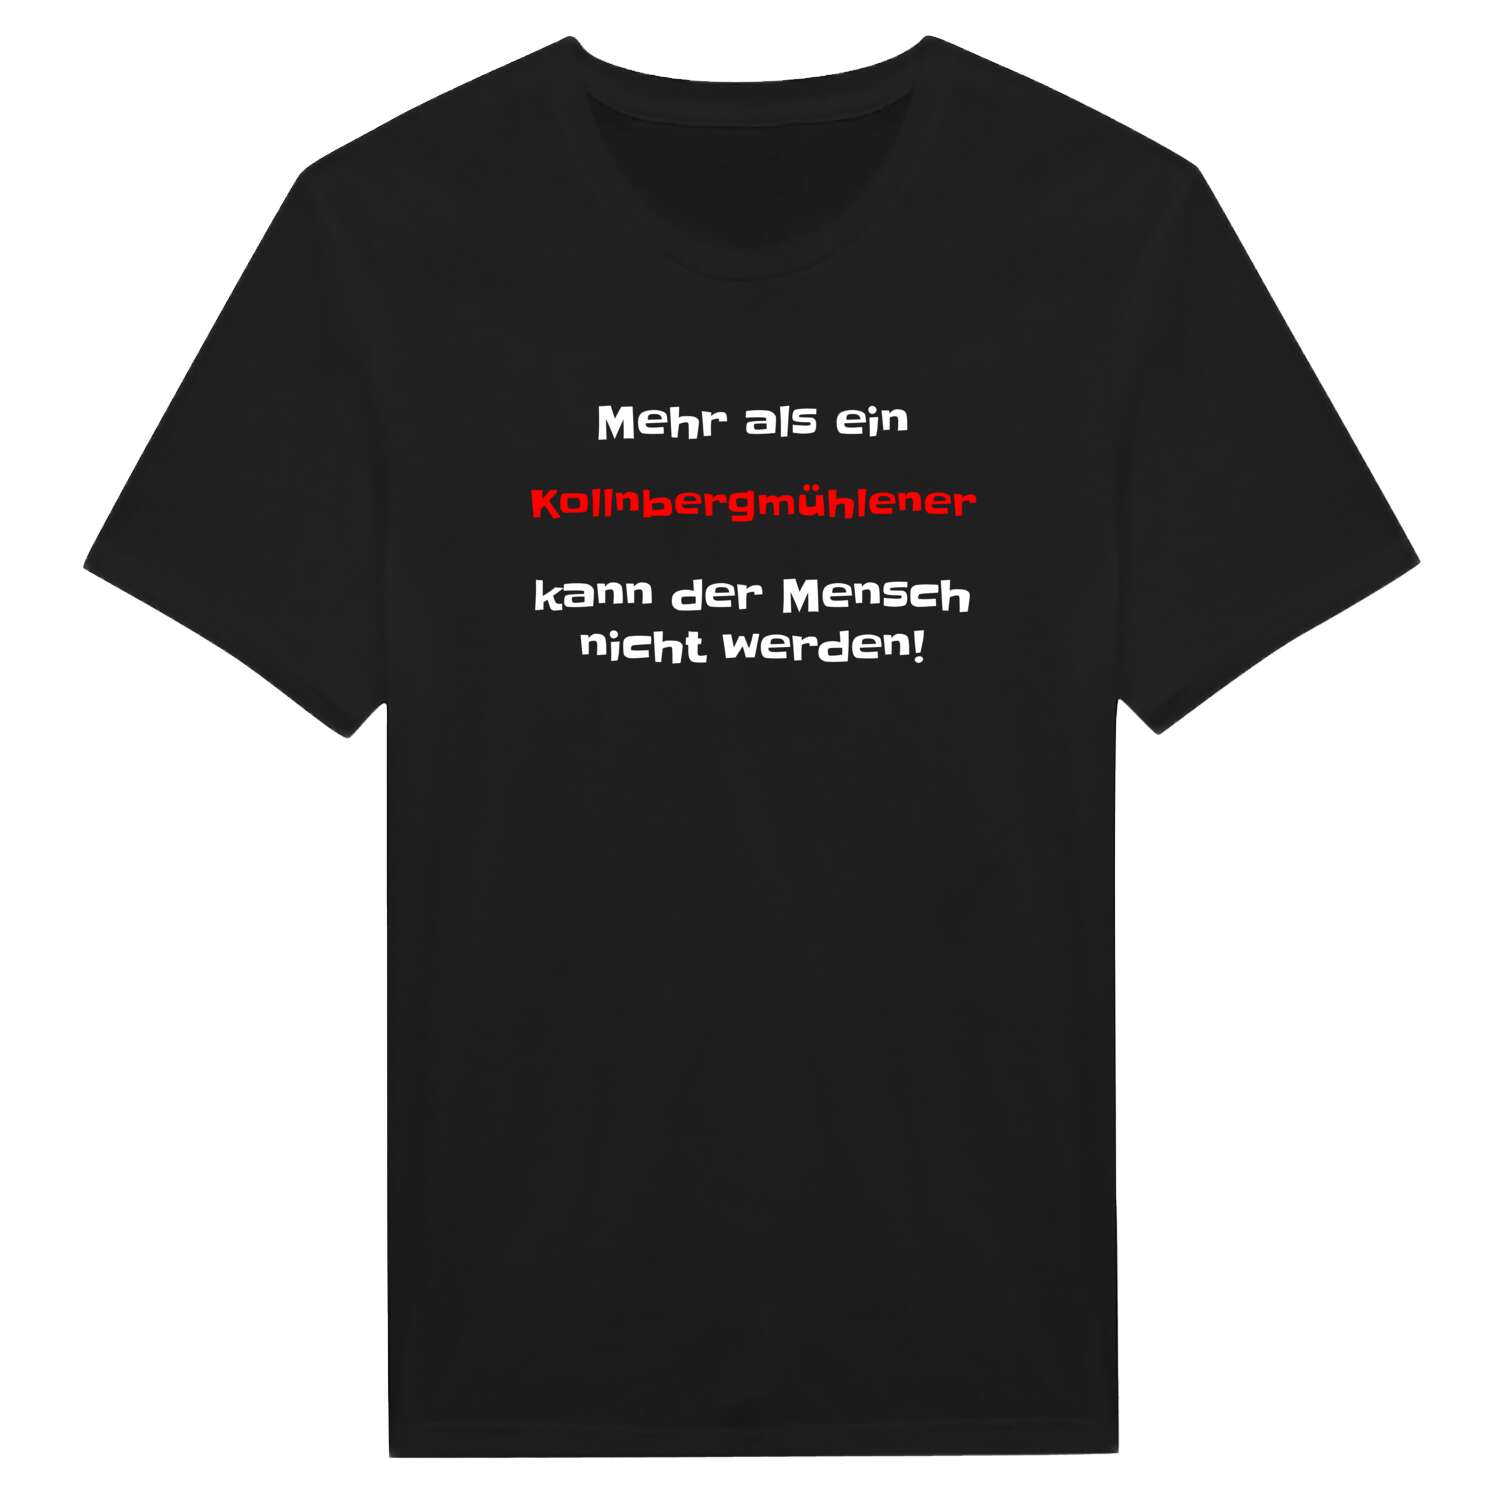 Kollnbergmühle T-Shirt »Mehr als ein«